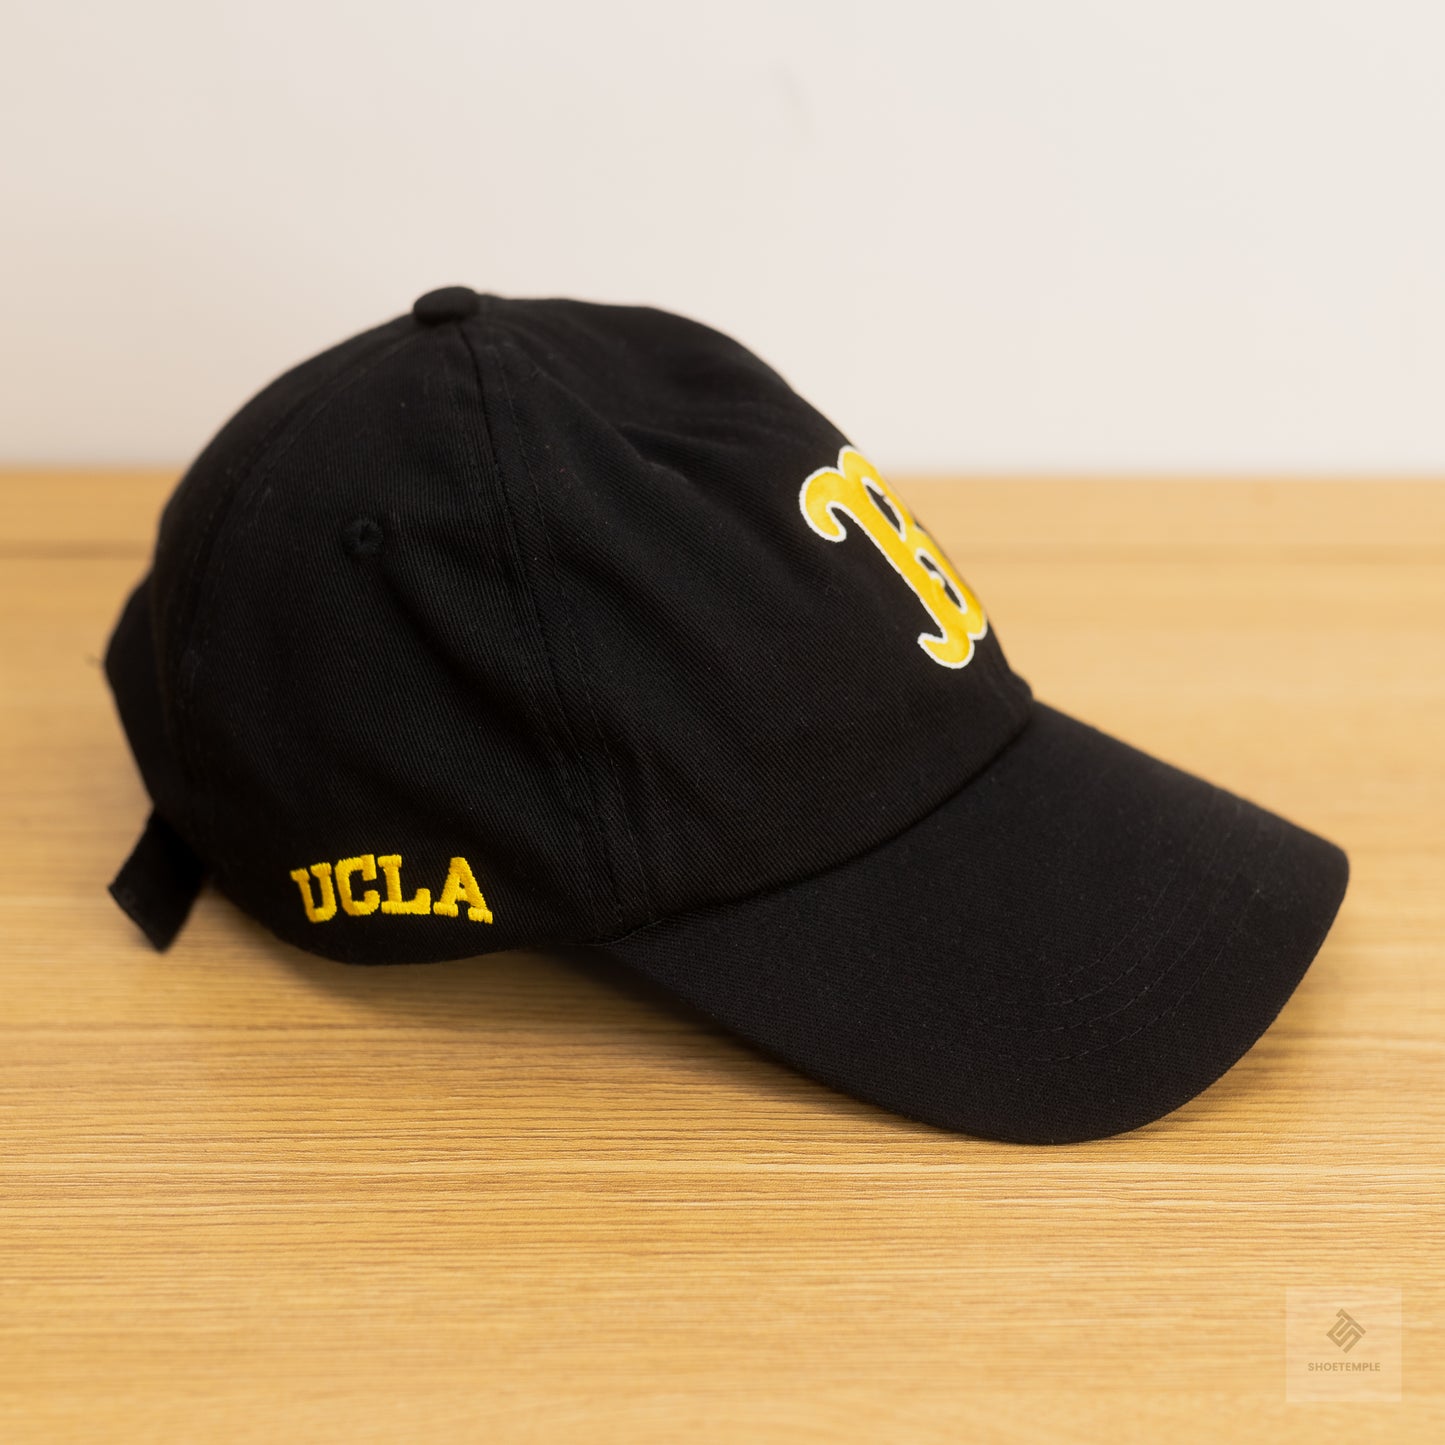 UCLA Cap